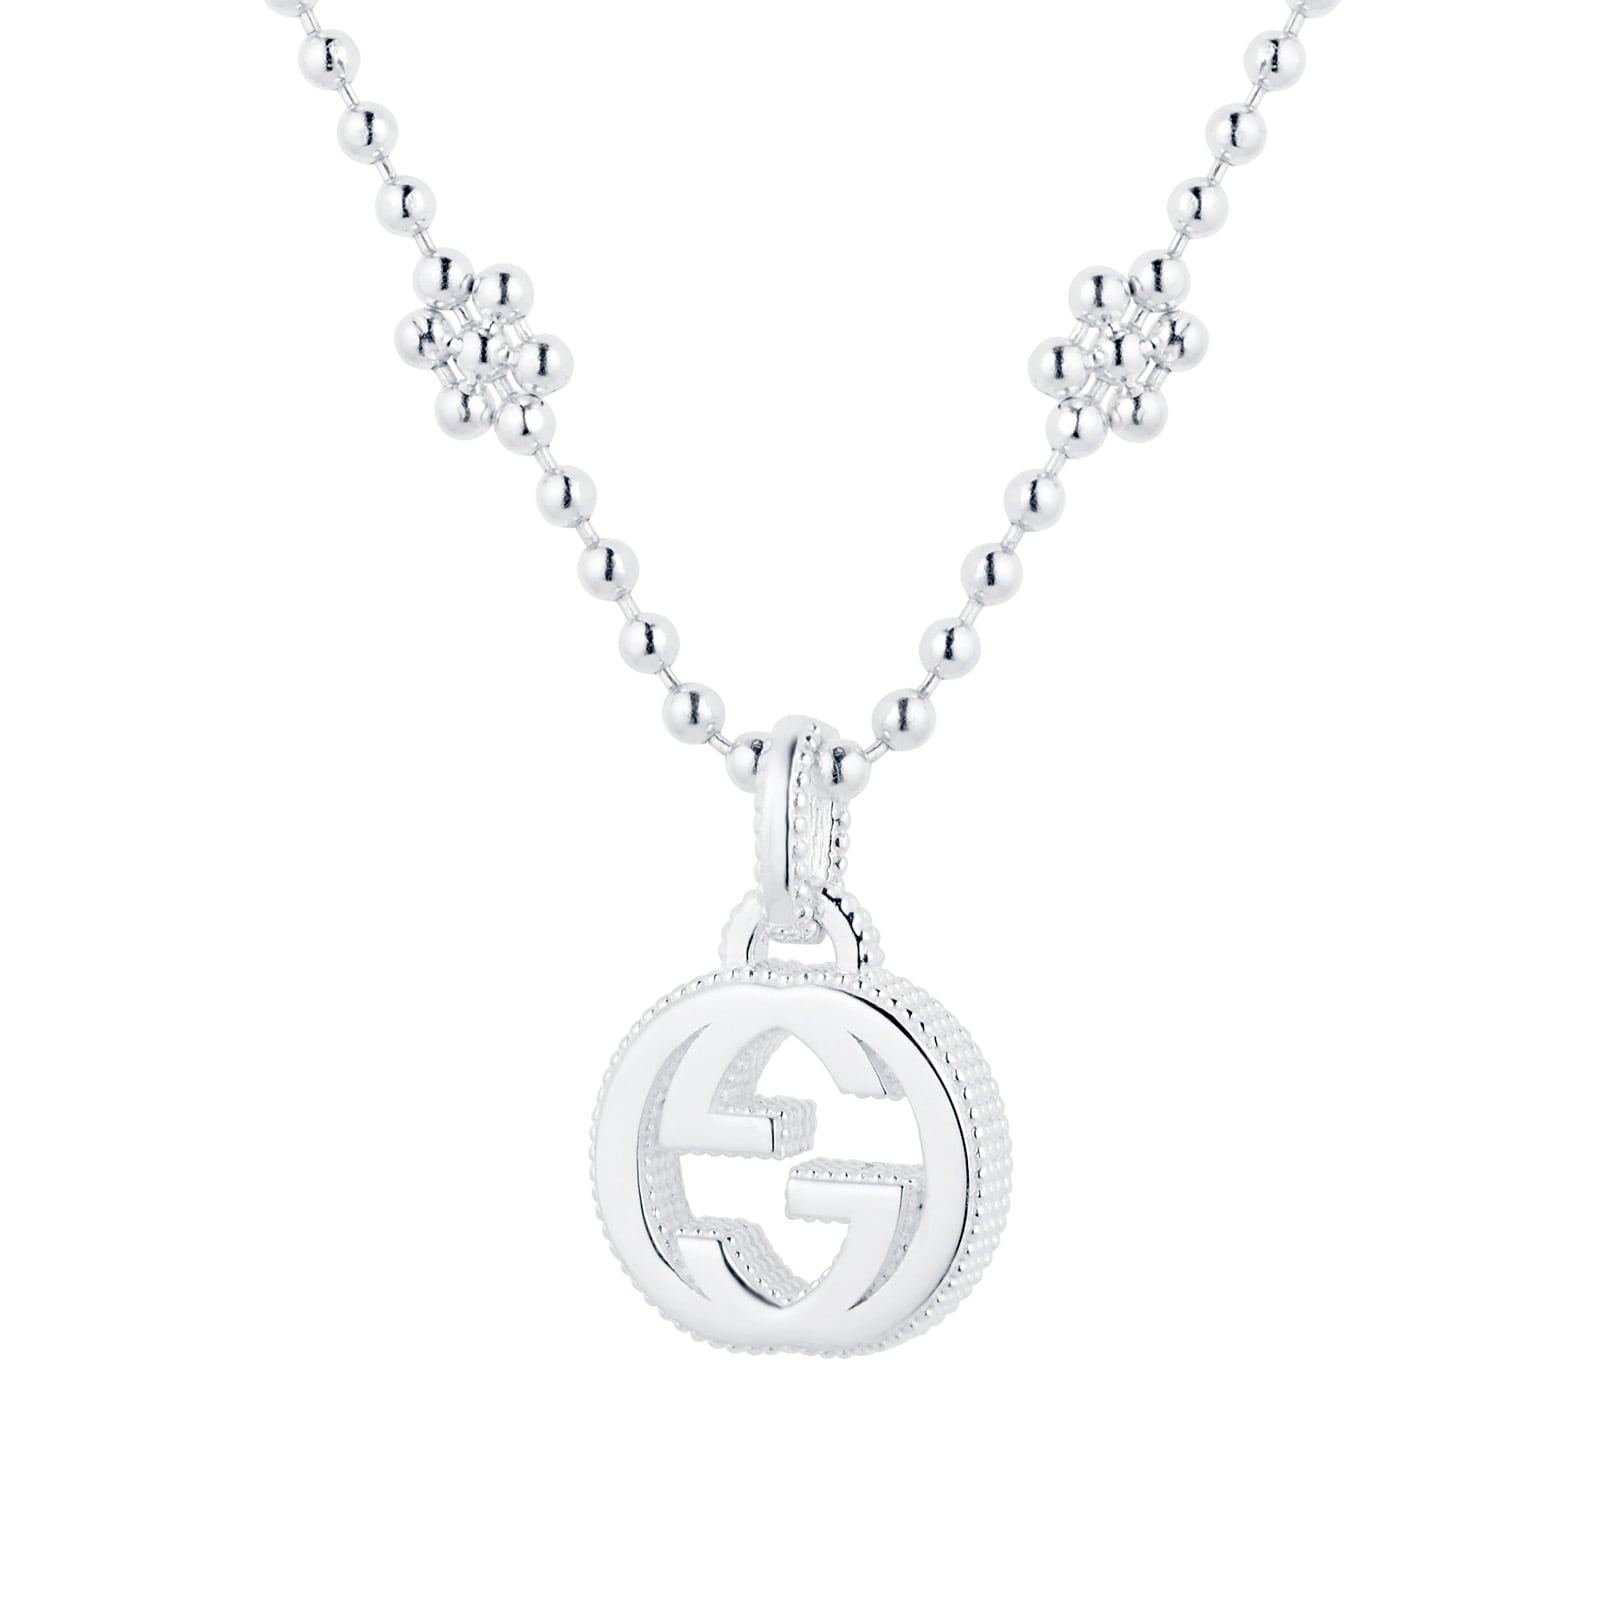 Gucci Interlocking G Necklace in Silver YBB47922100100U | Goldsmiths